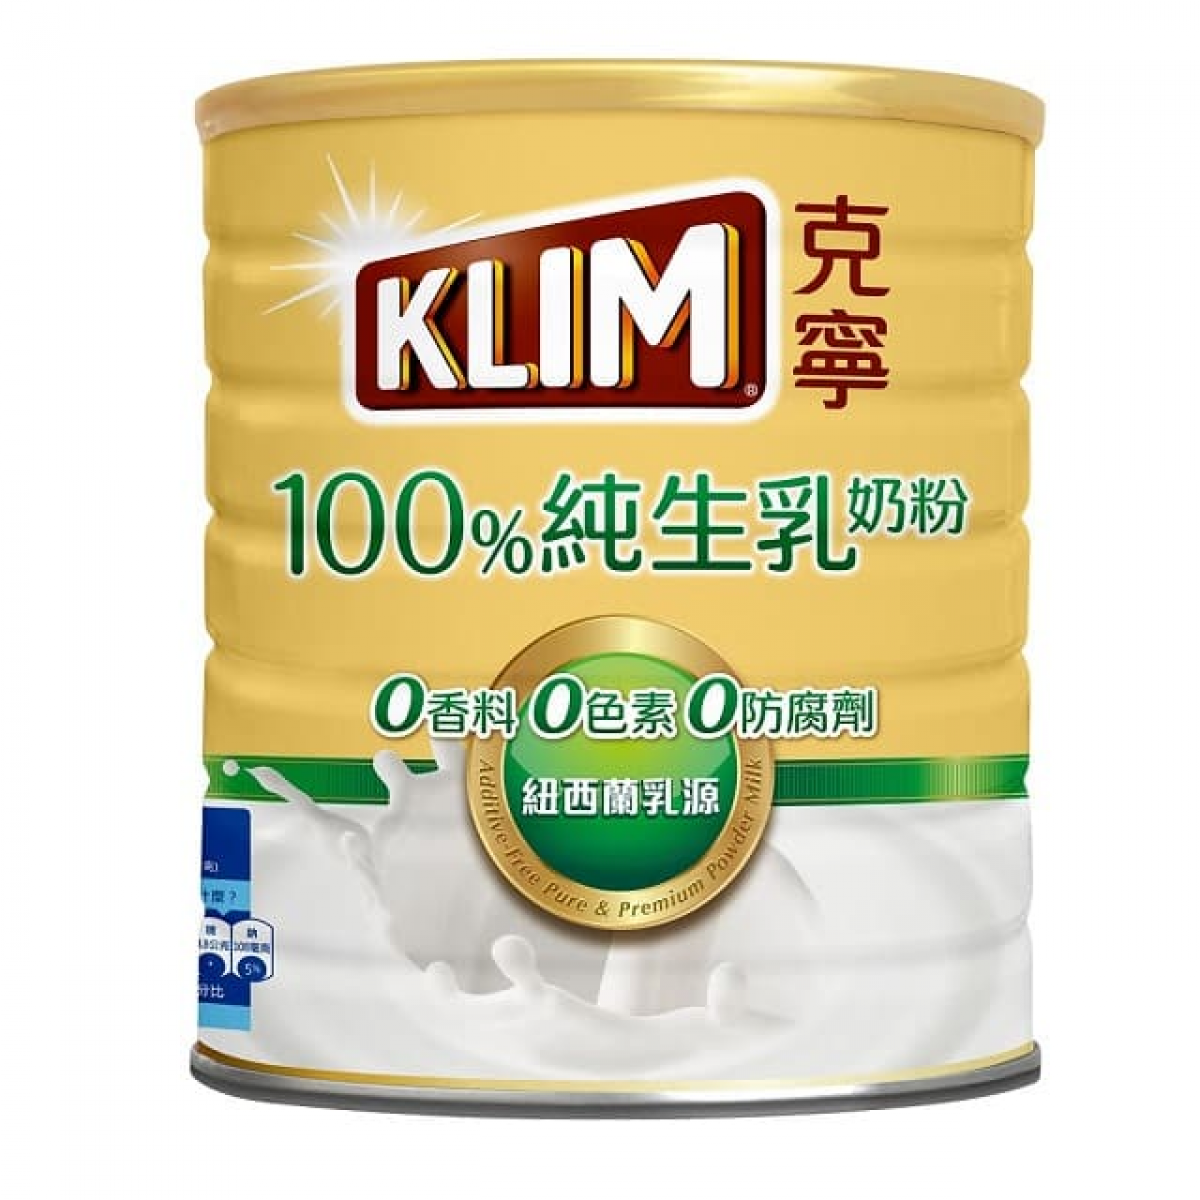 克宁100%纯生乳奶粉2.3kg